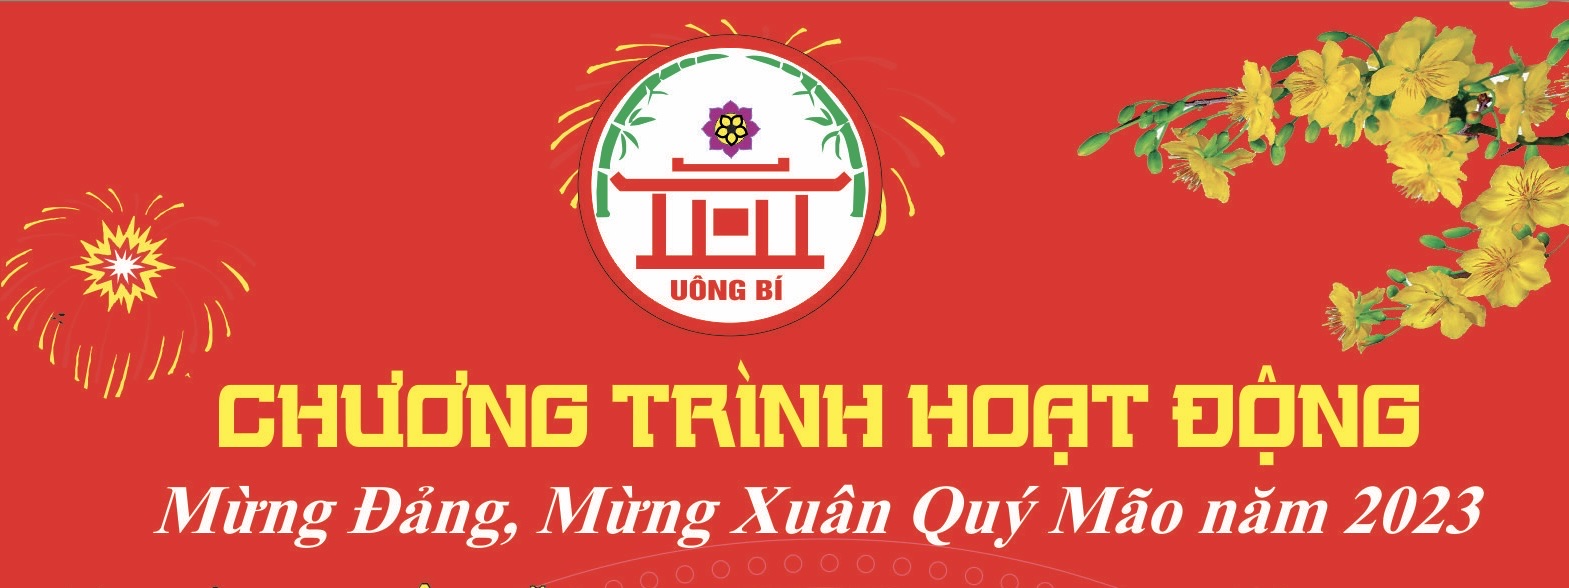 TP Uông Bí: Chương trình hoạt động Mừng Đảng, Mừng Xuân Quý Mão năm 2023